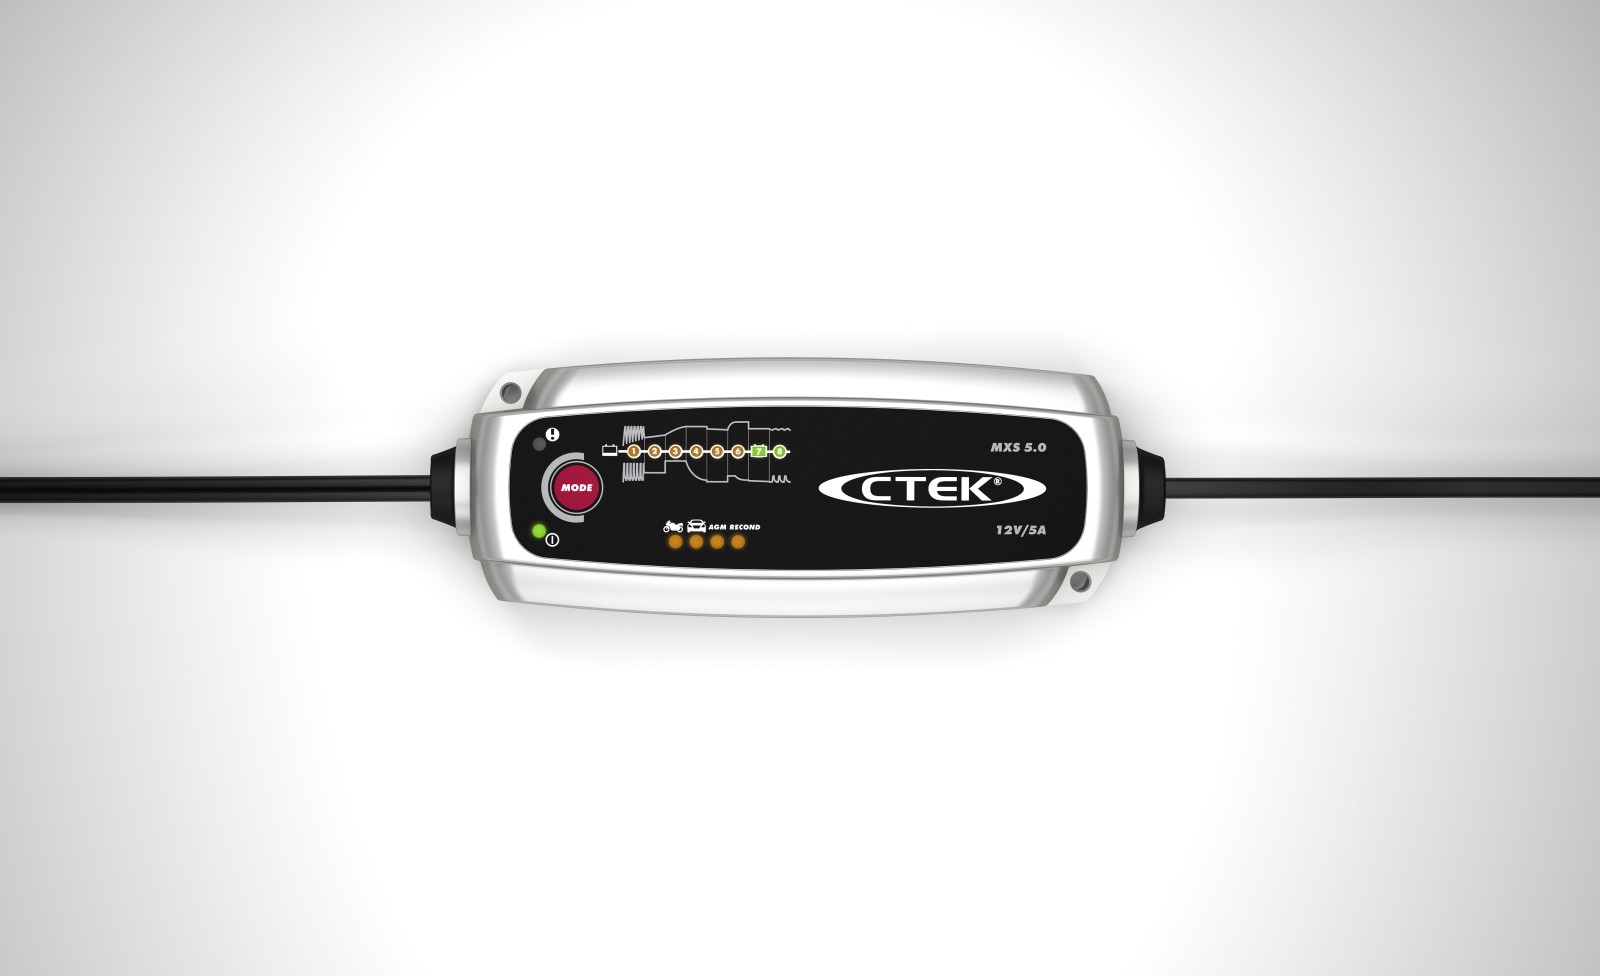 CTEK Ctek Battery Charger MXS 5.0 12V 4.30 amp 8 Step Charging Program Spla… 40-206 